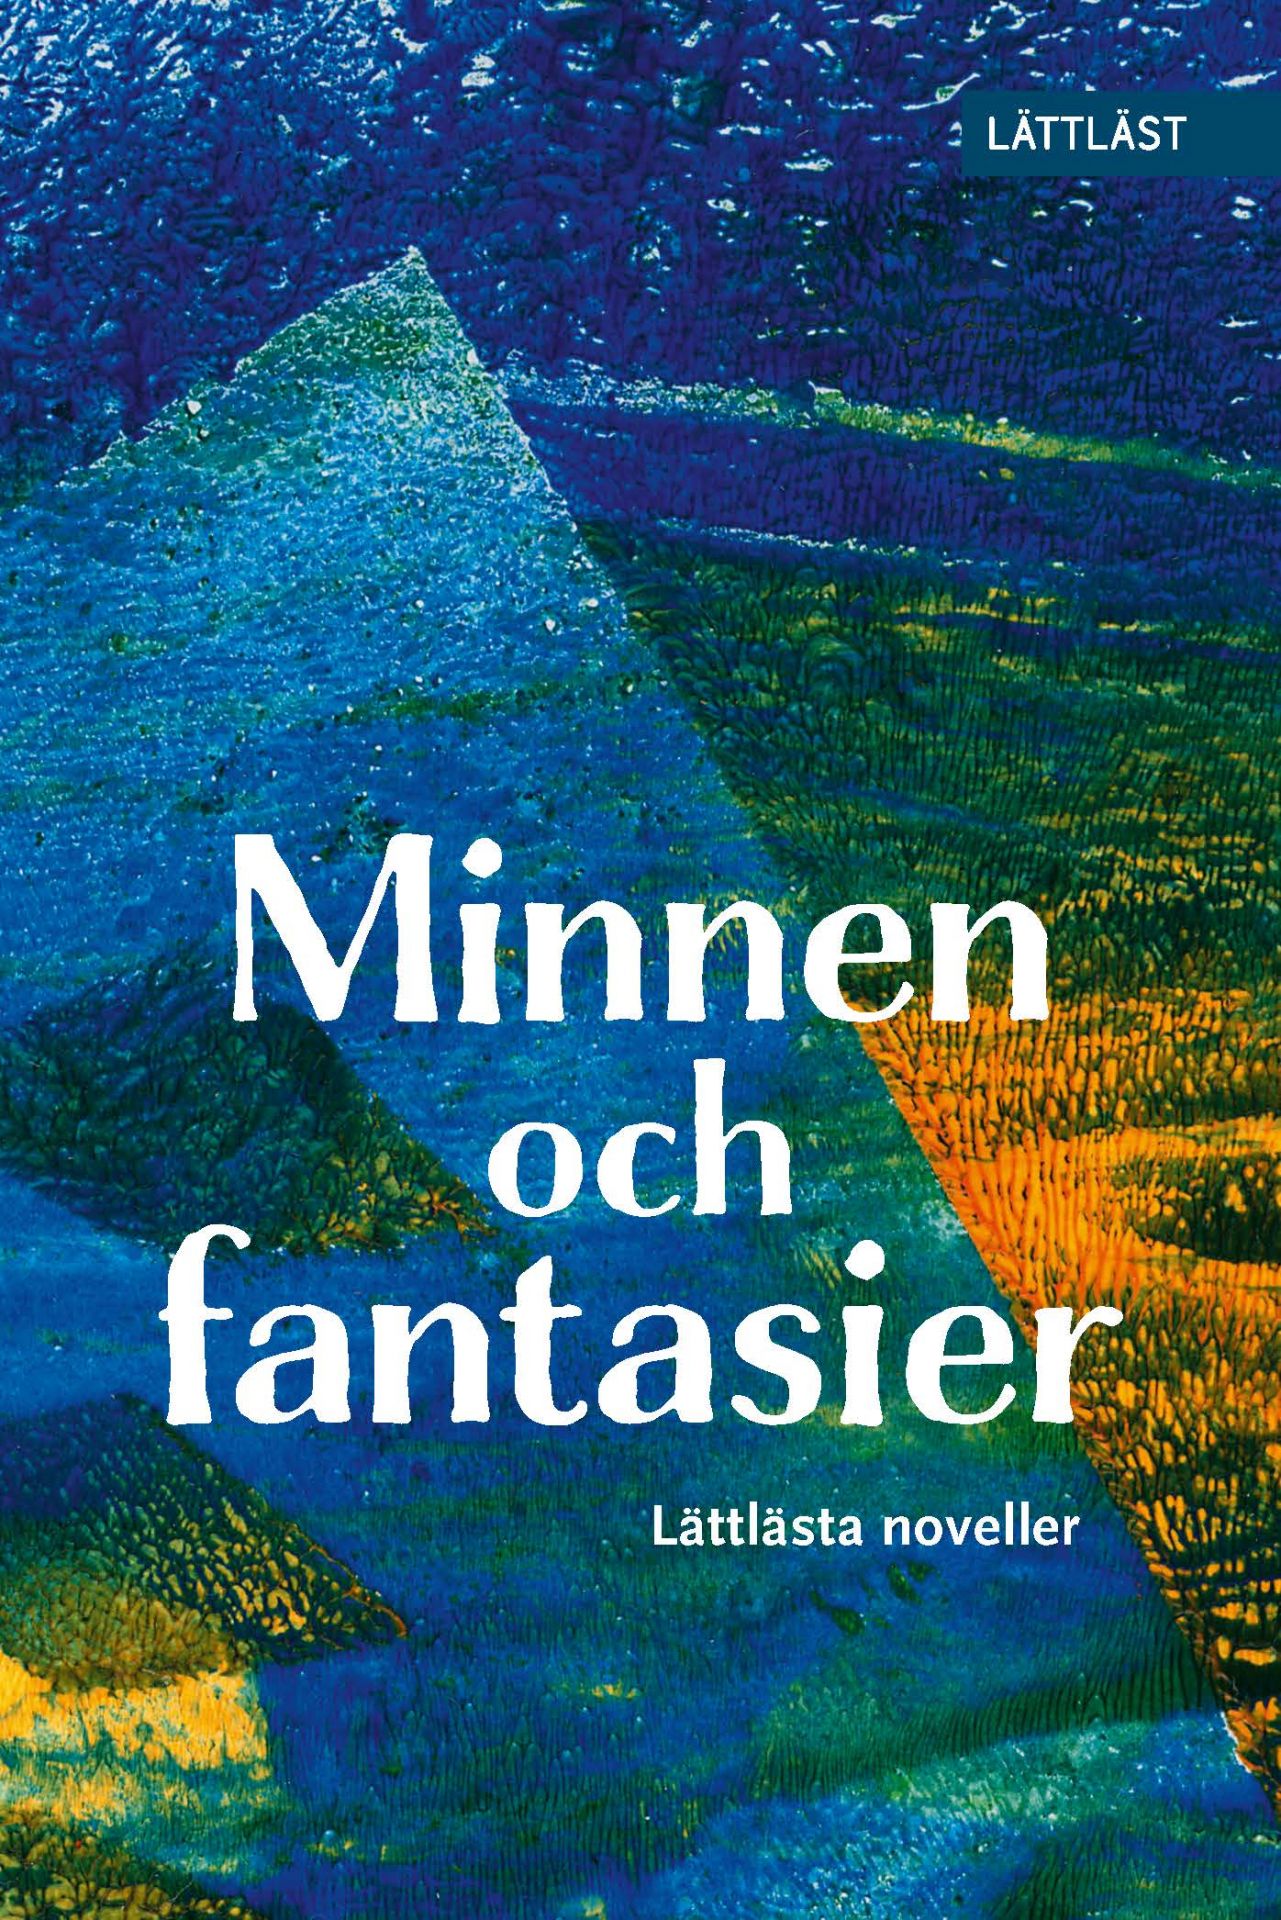 Pärmen till novellsamlingen Minnen och fantasier har inga bilder men ser grann ut med olika nyanser av blått, grönt och orange.